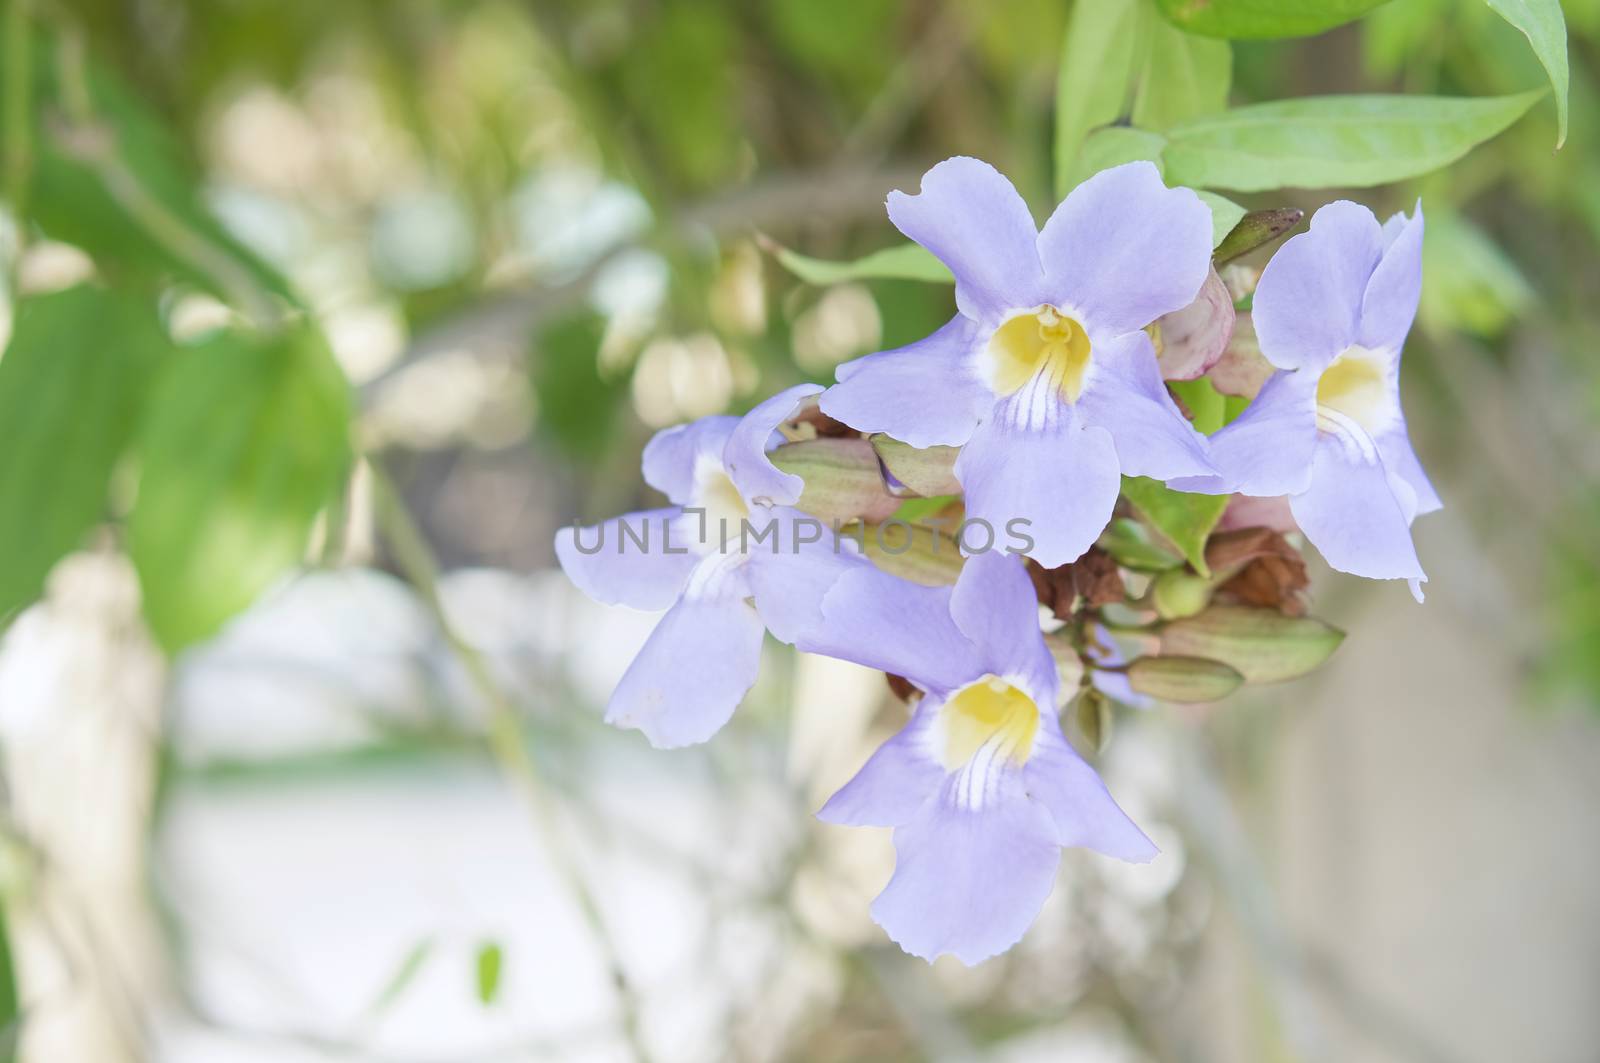 Blue trumpet vine, Thunbergia laurifolia or Laurel clock vine in public garden.